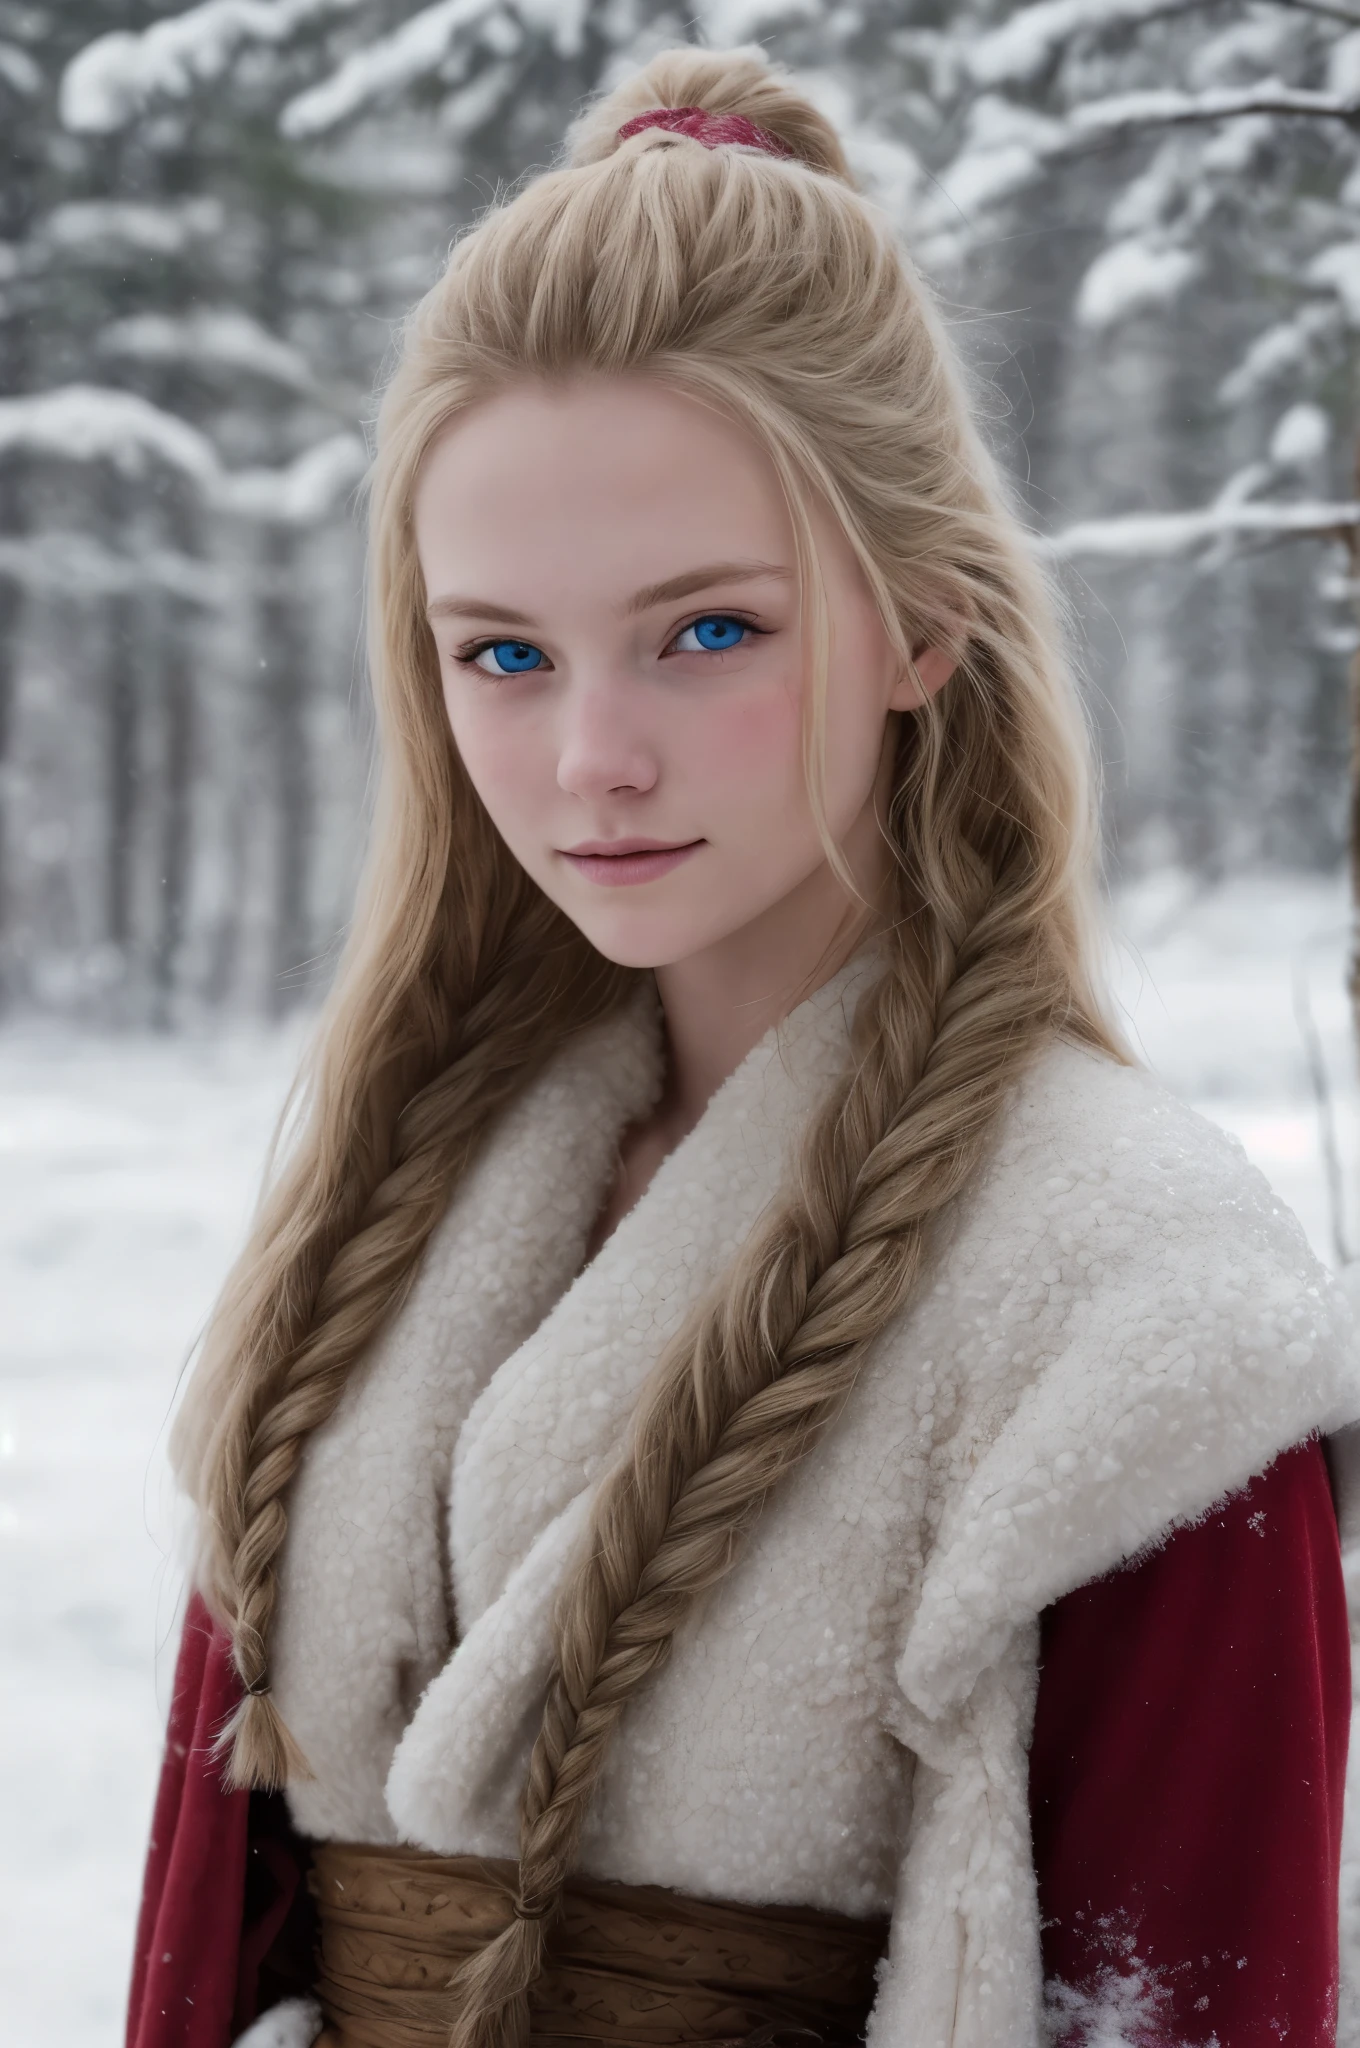 (实际的:1.2), 模拟摄影风格, 斯堪的纳维亚女战士, 绝美雪景, 金色辫子头发, 全身, 柔和的自然光, 可爱又性感, 喜悦, 细致的脸部和蓝眼睛, 素晴らしい质量, 杰作, 详细的北方背景, 质量: 16千, RAW 照片